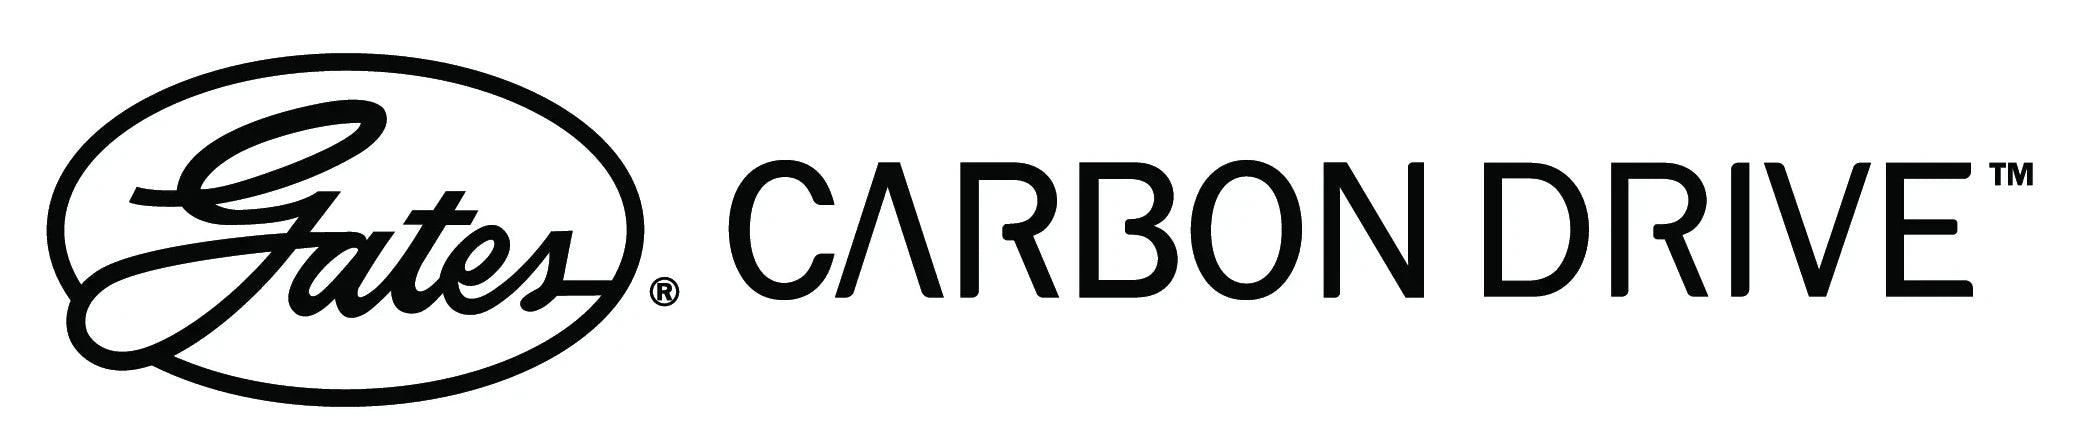 Gates Carbon Drive™